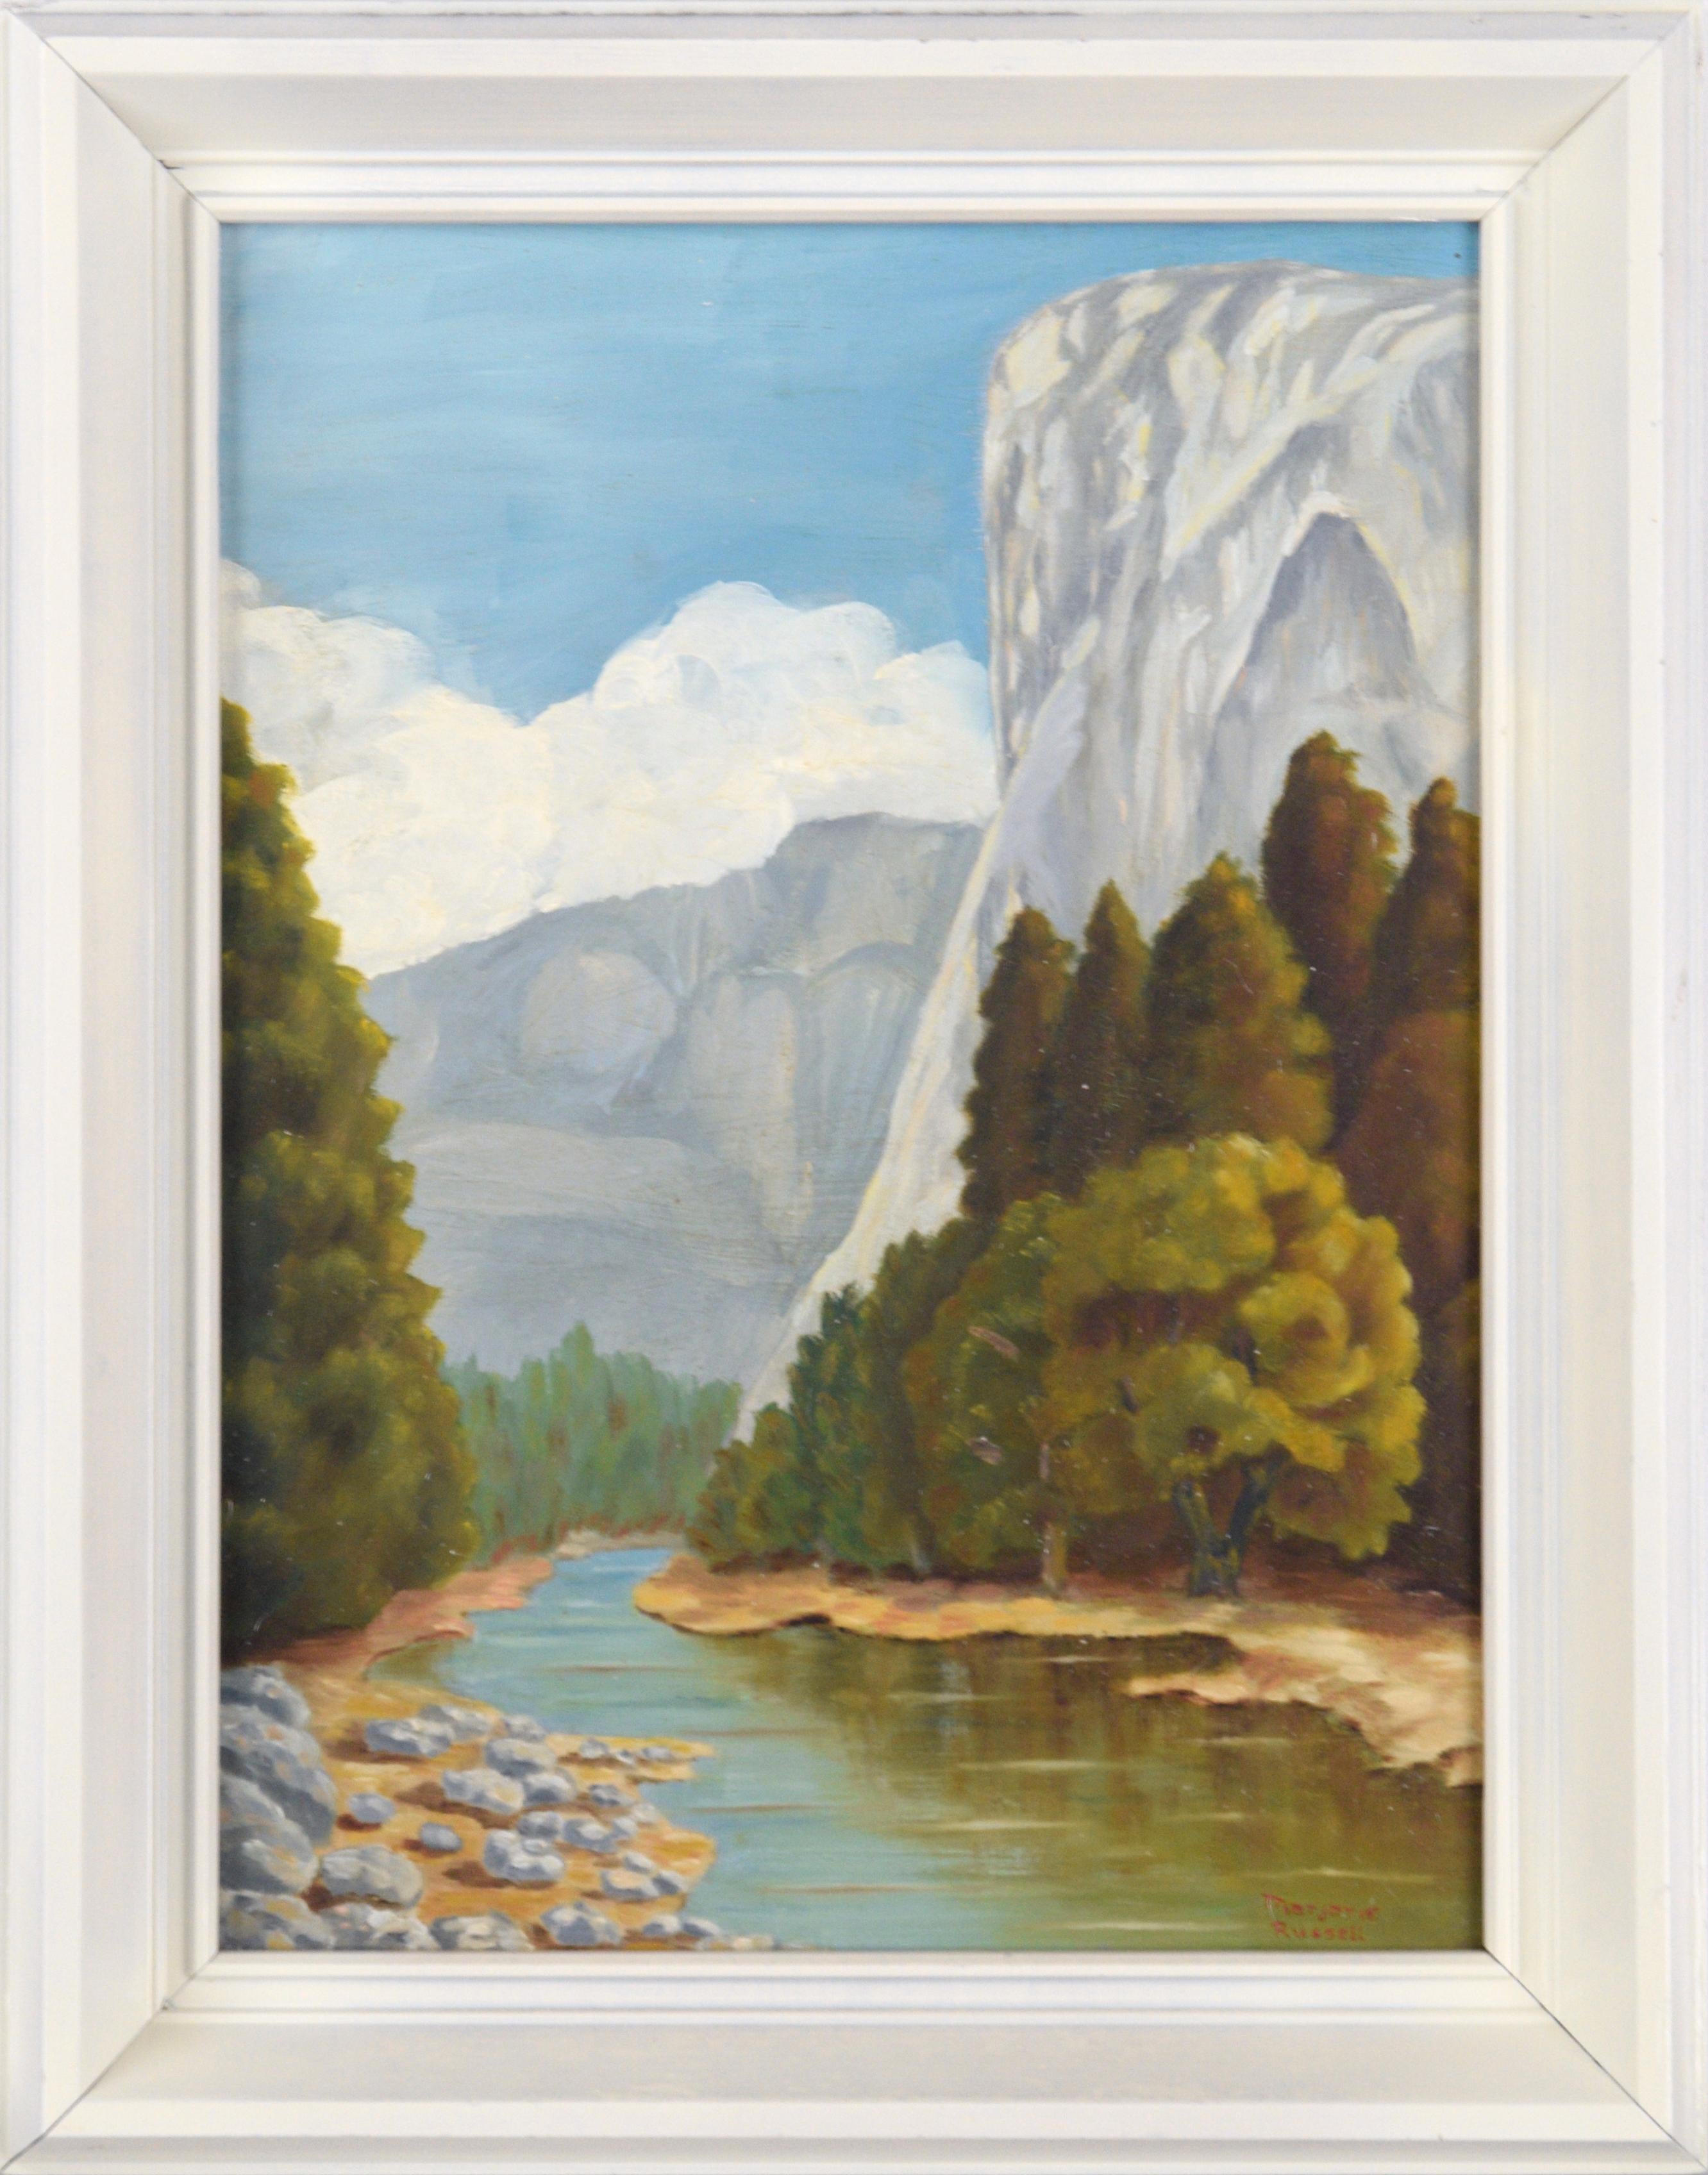 El Capitan and the Merced River - Yosemite - Paysage vertical du milieu du siècle dernier